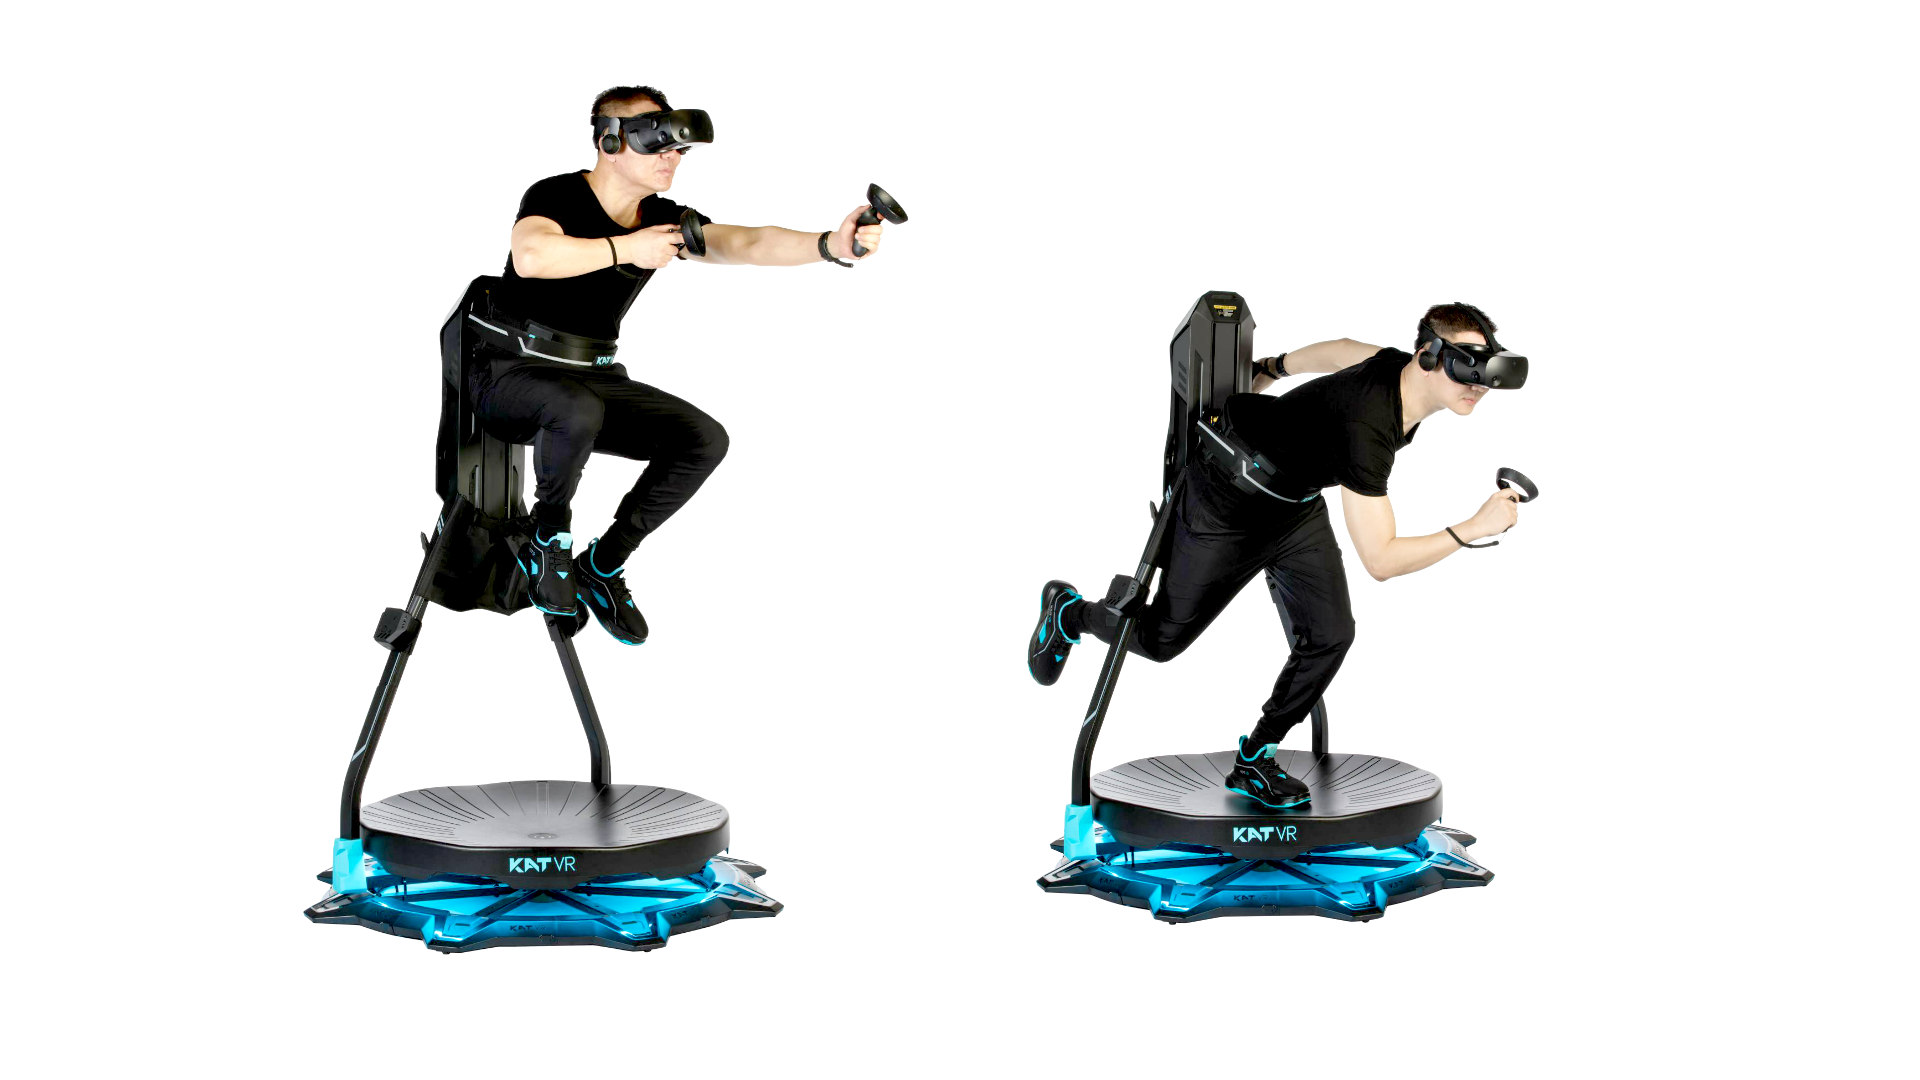 New Kat Walk VR Treadmill Aims to Impress At-Home Users, Kickstarter Coming May 14th